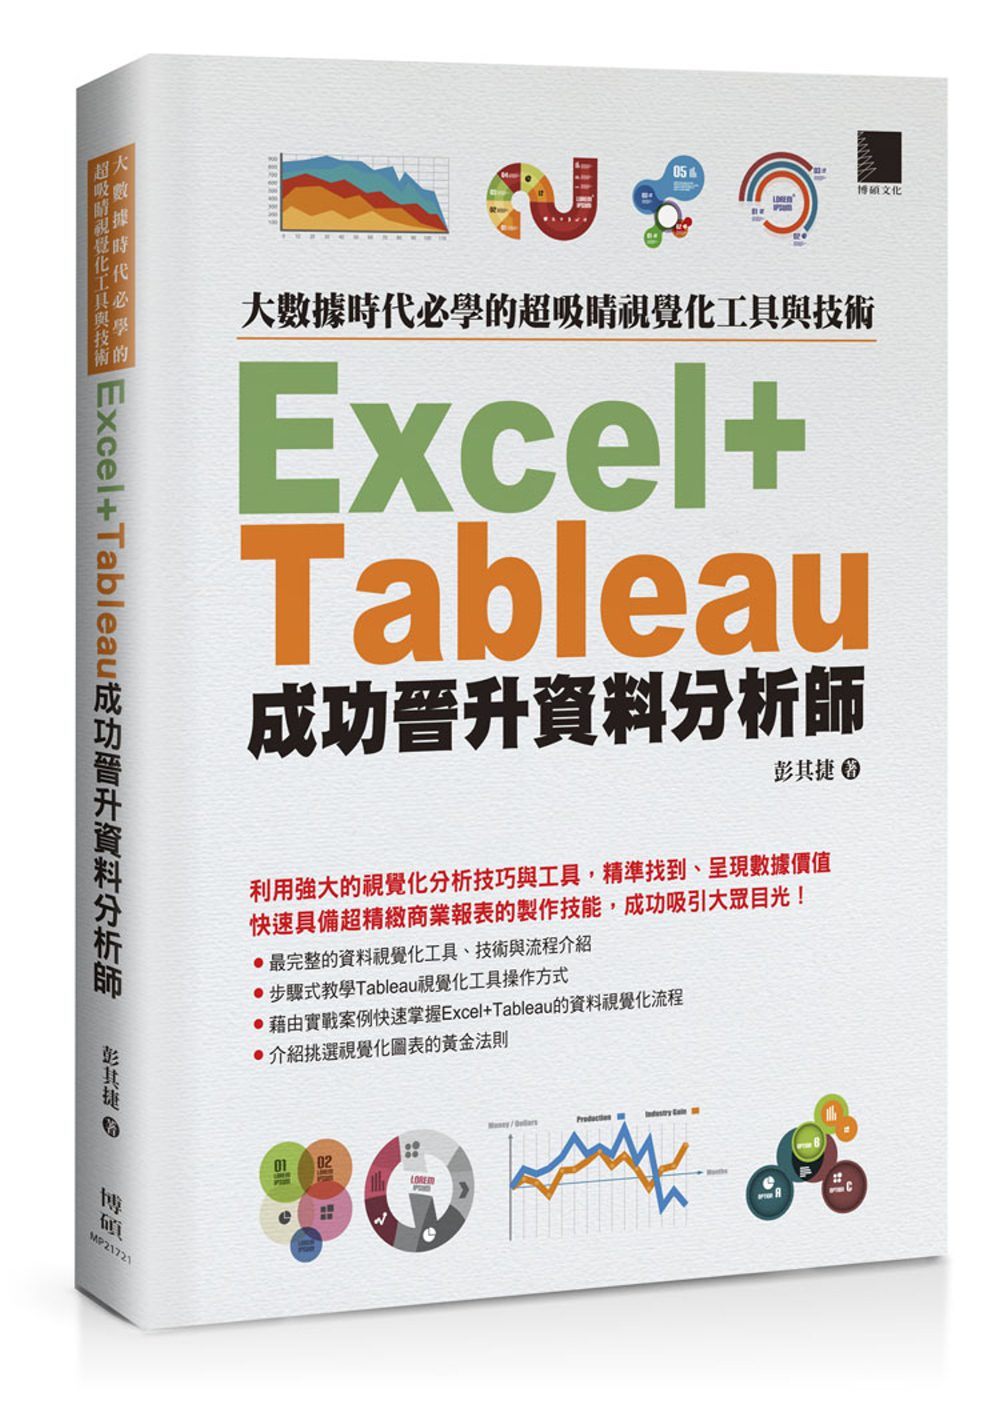 大數據時代必學的超吸睛視覺化工具與技術：Excel+Tableau成功晉升資料分析師